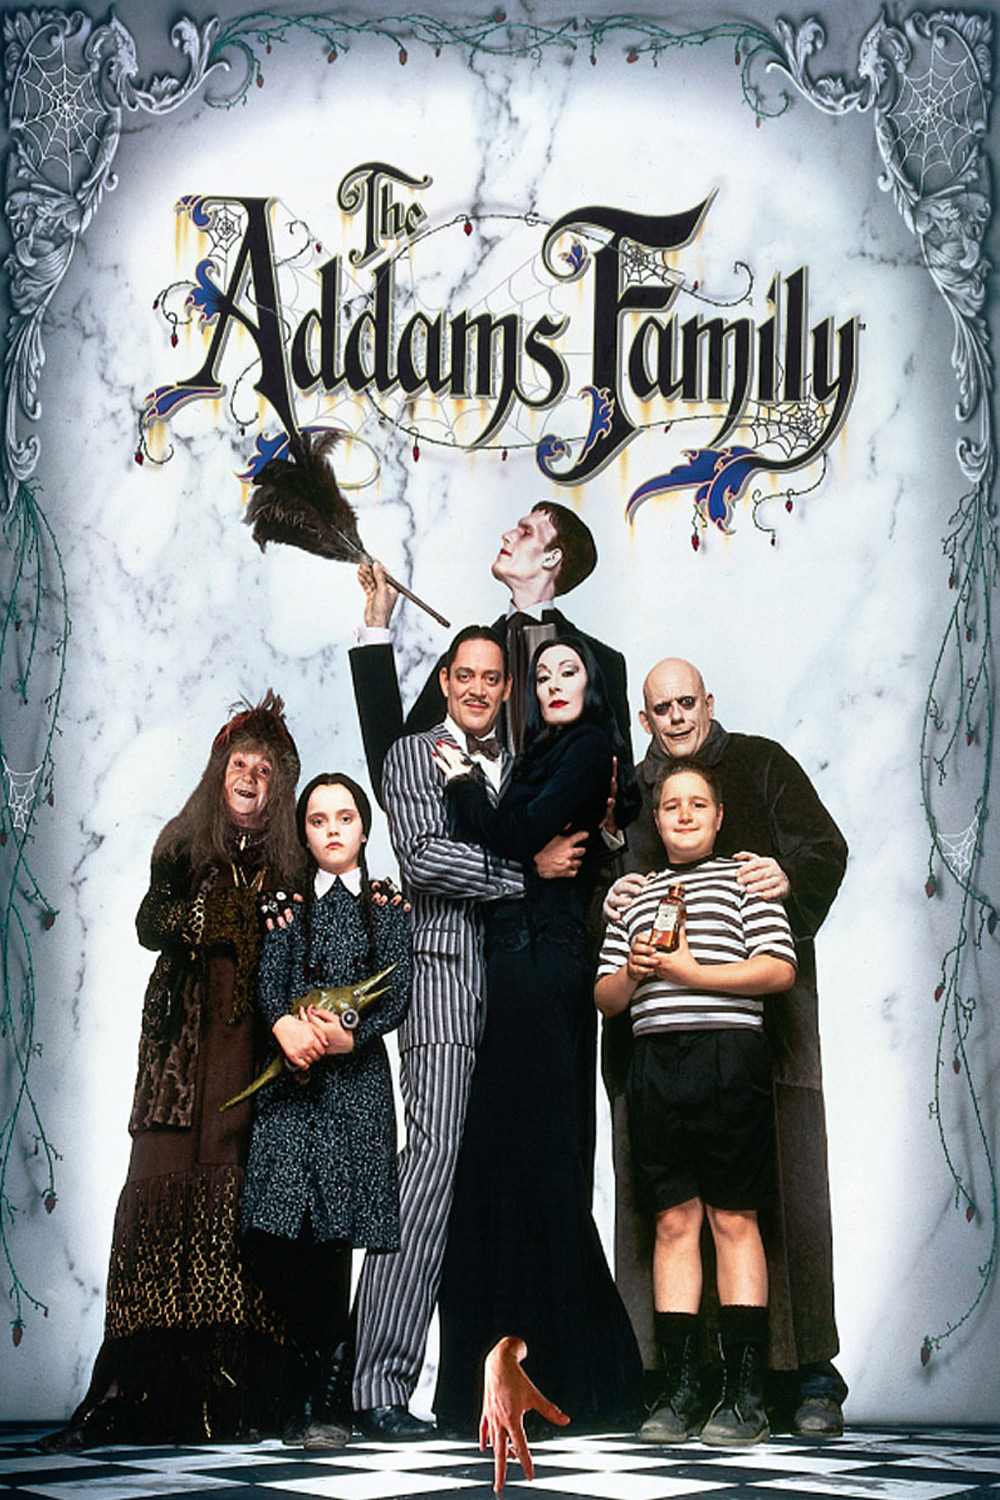 Addams Family Values #2